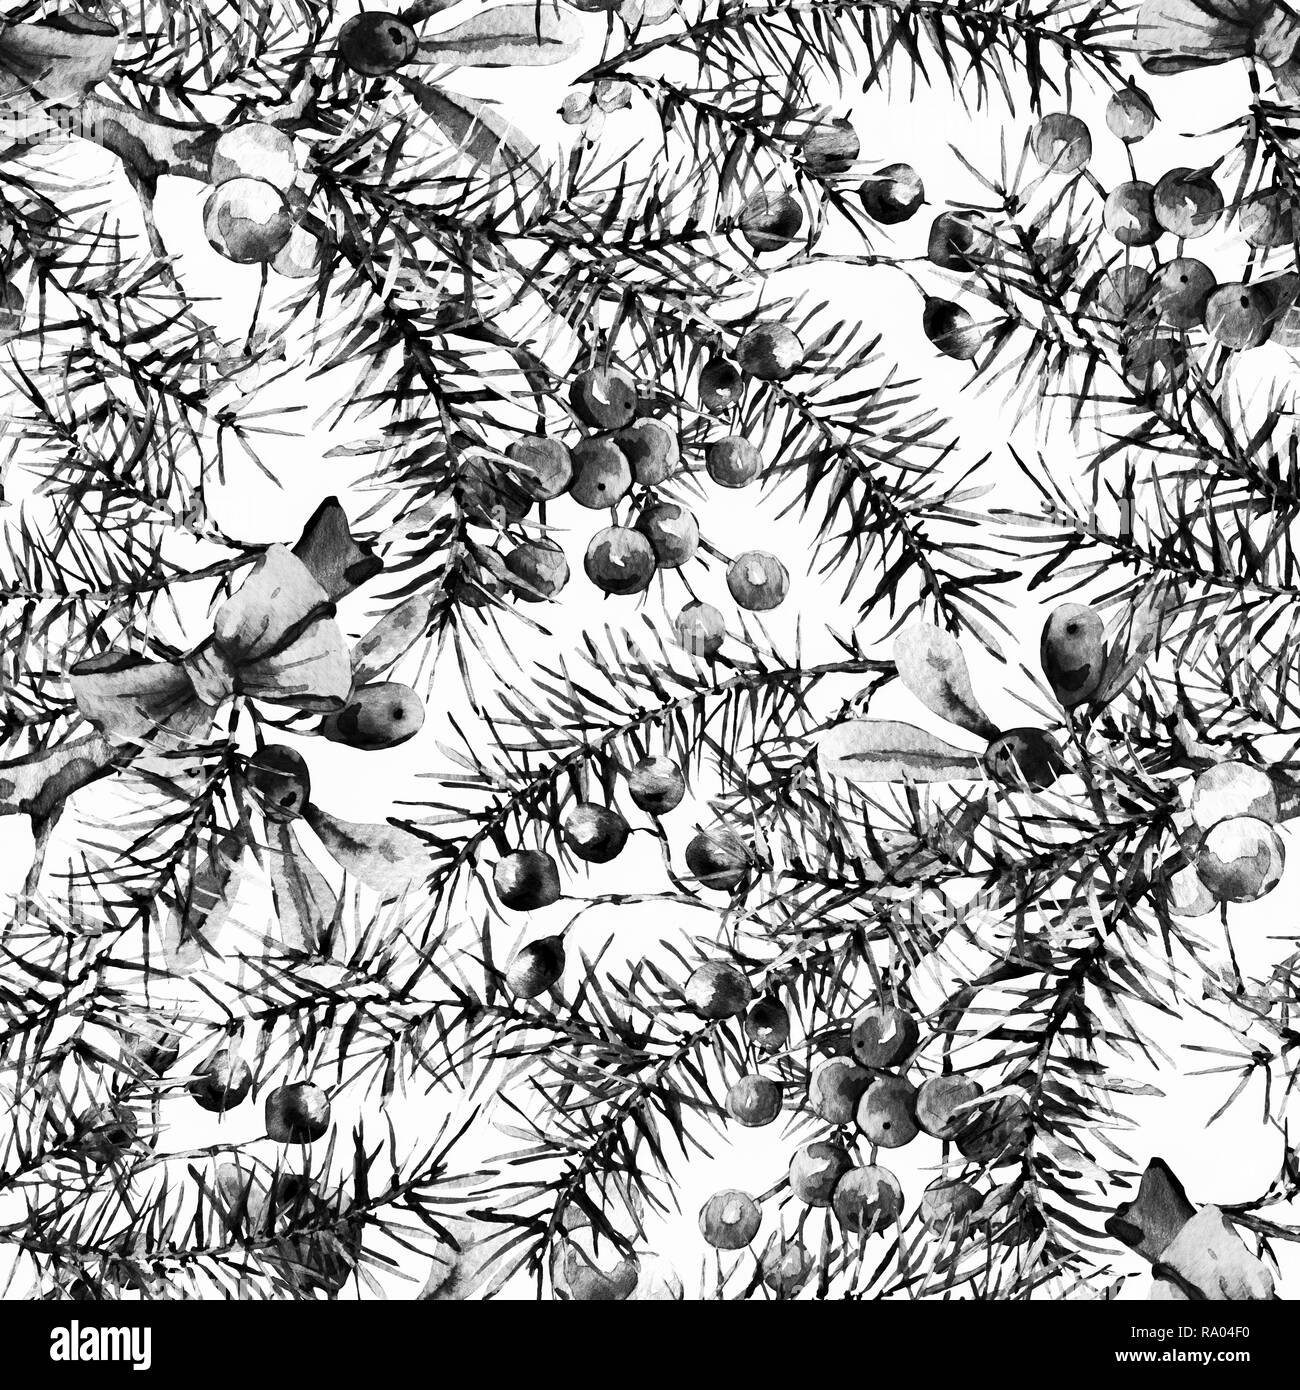 Aquarelle hiver noël monochrome motif transparent avec des branches d'arbre et de baies. Illustration peinte à la main naturelle Banque D'Images